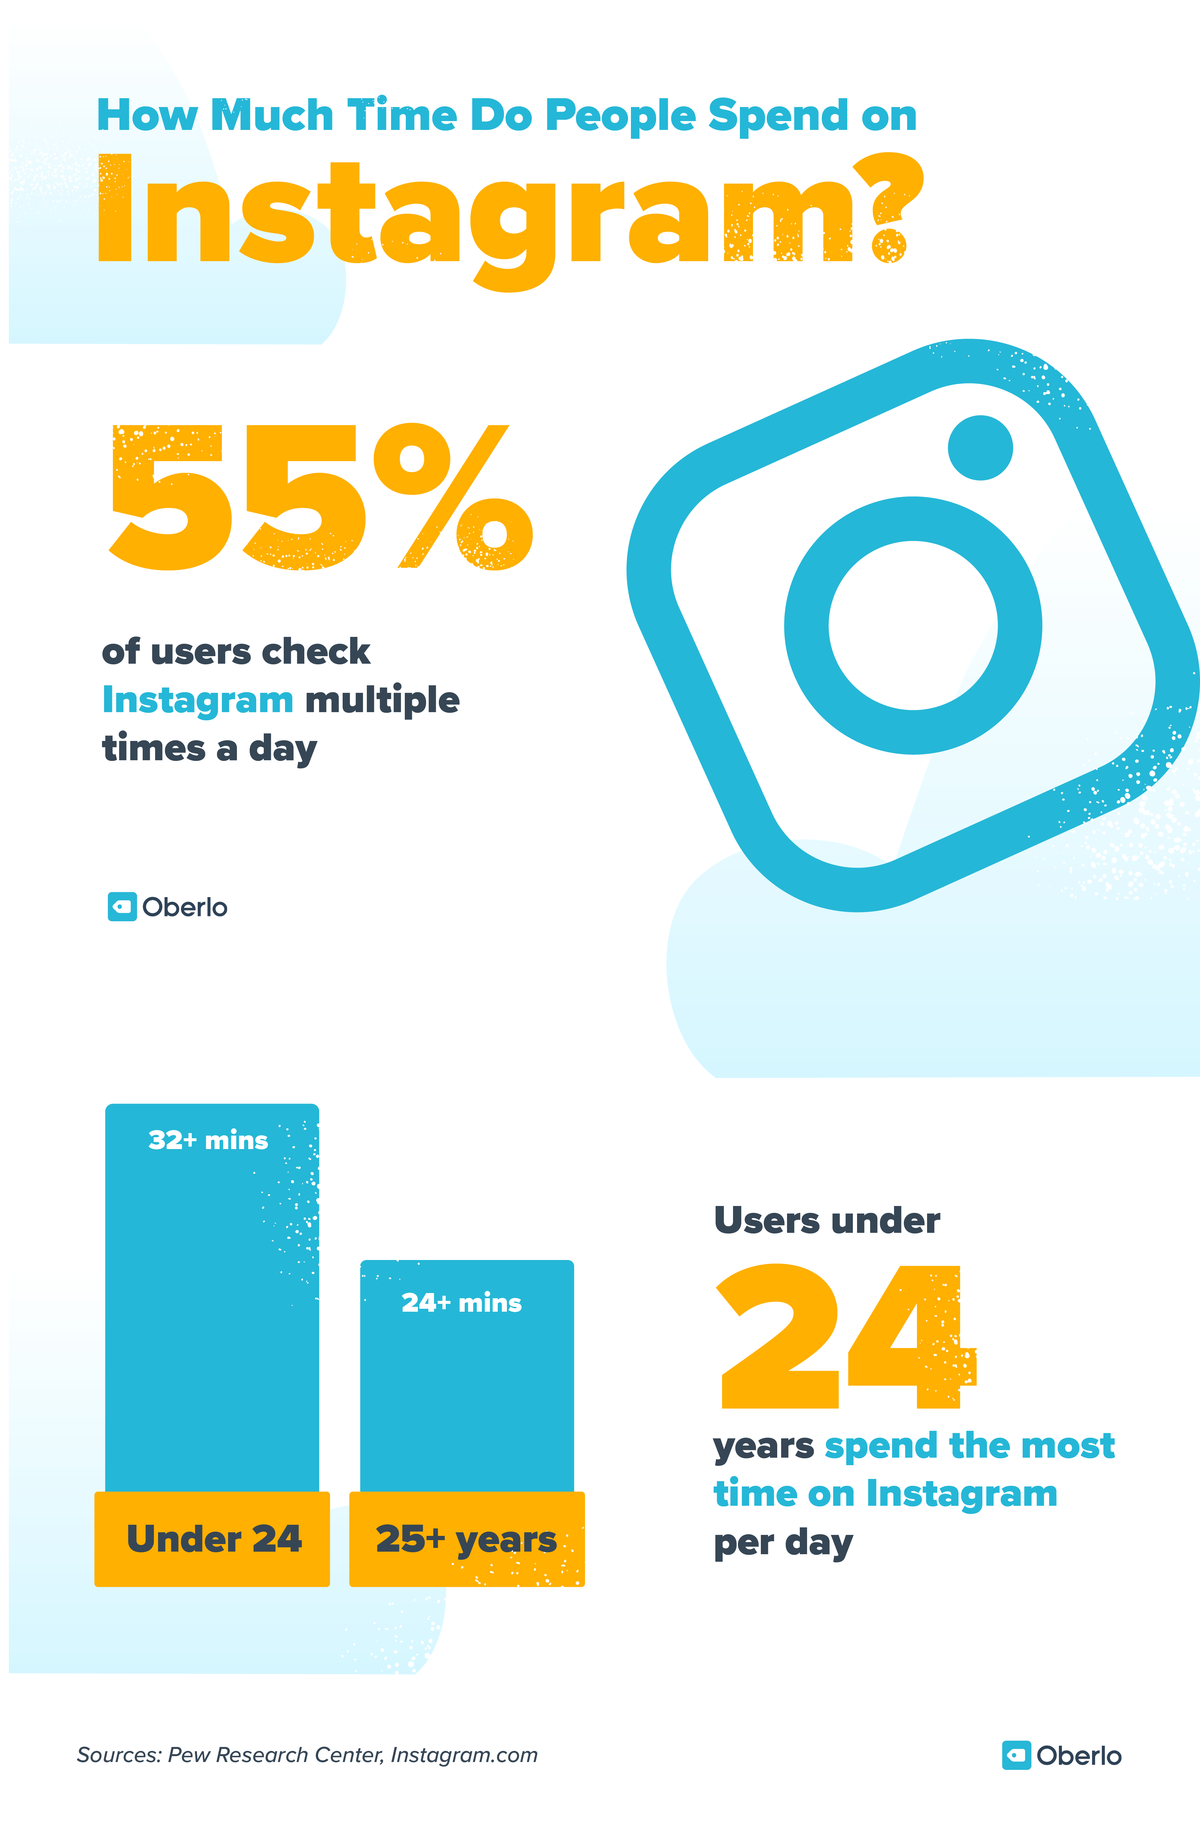 סטטיסטיקה של שיווק ברשתות חברתיות: 55% ממשתמשי האינסטגרם בודקים זאת מספר פעמים ביום. משתמשים מתחת לגיל 24 מבלים הכי הרבה זמן באינסטגרם ביום (יותר מ -32 דקות)